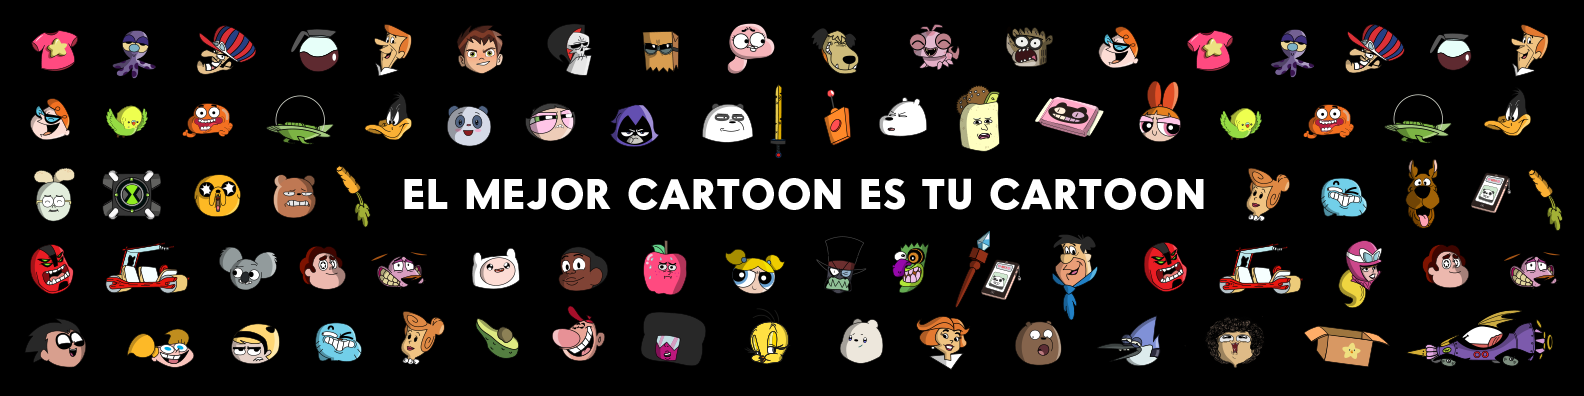 "El mejor cartoon es tu cartoon": Cartoon Network invita a distintas generaciones de fans a celebrar sus 30 años junto a sus cartoons favoritos 1